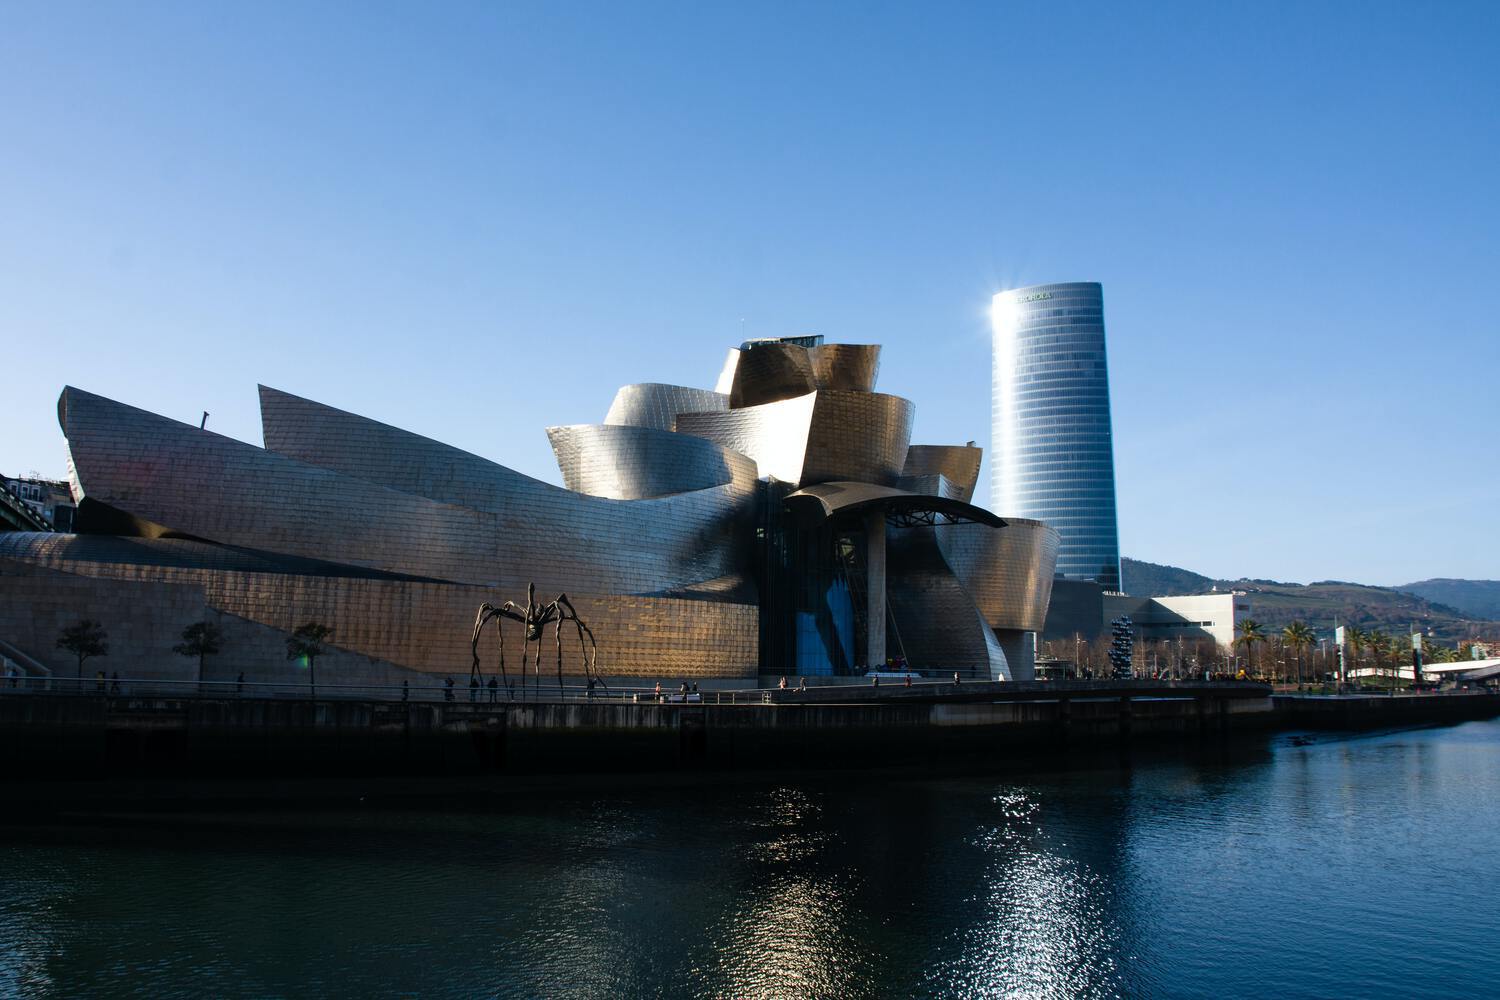 Years of the Guggenheim Museum in Bilbao, Spain